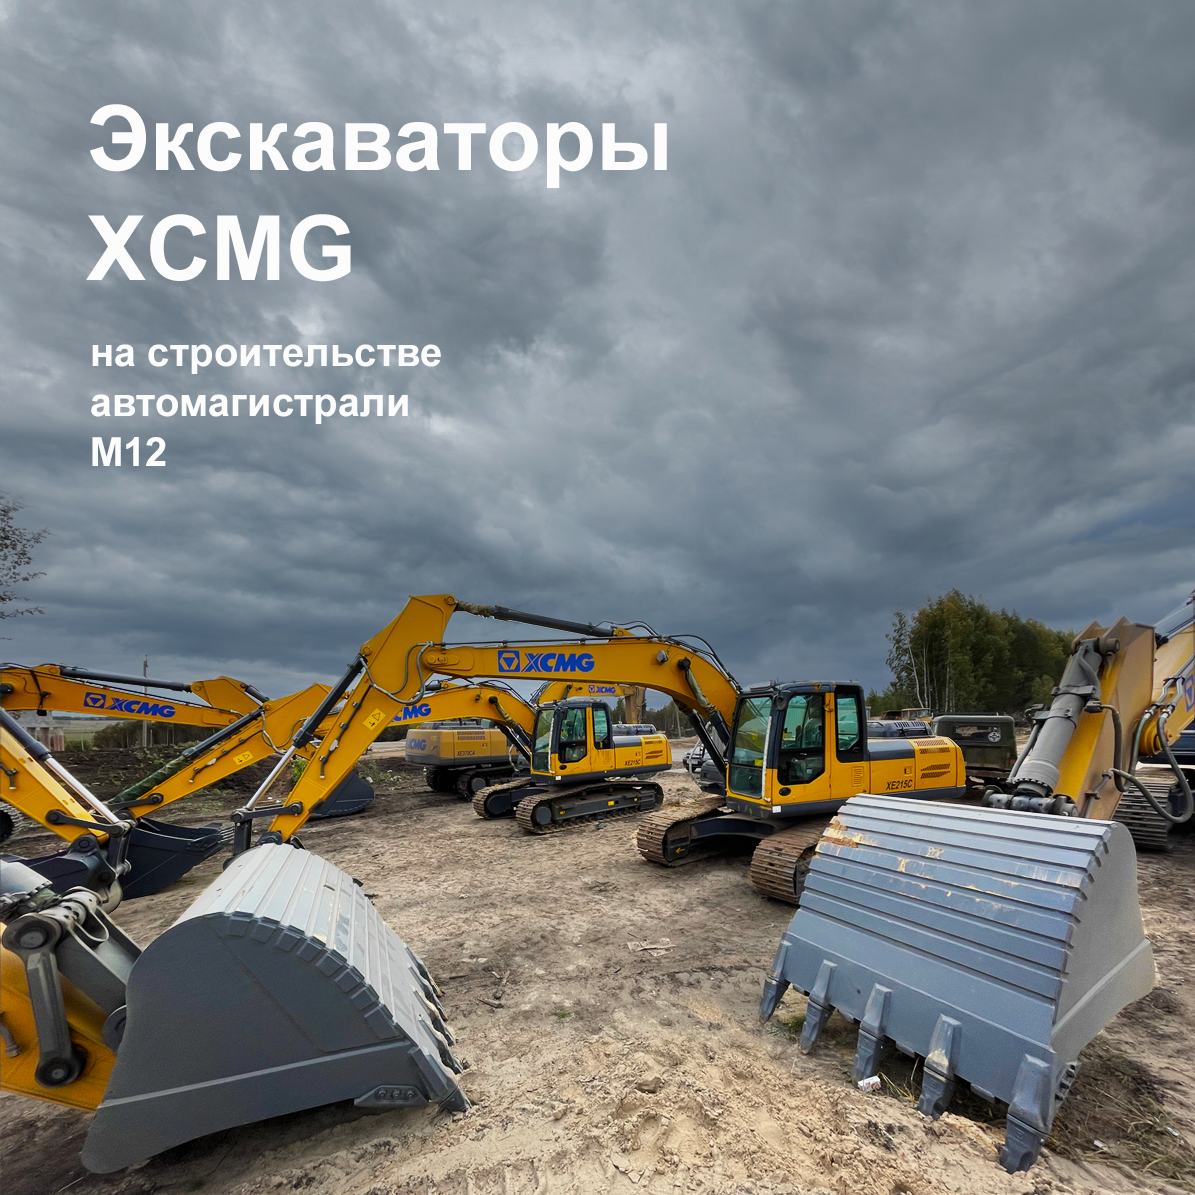 Экскаваторы XCMG строят автомагистраль М12 - официальное фото